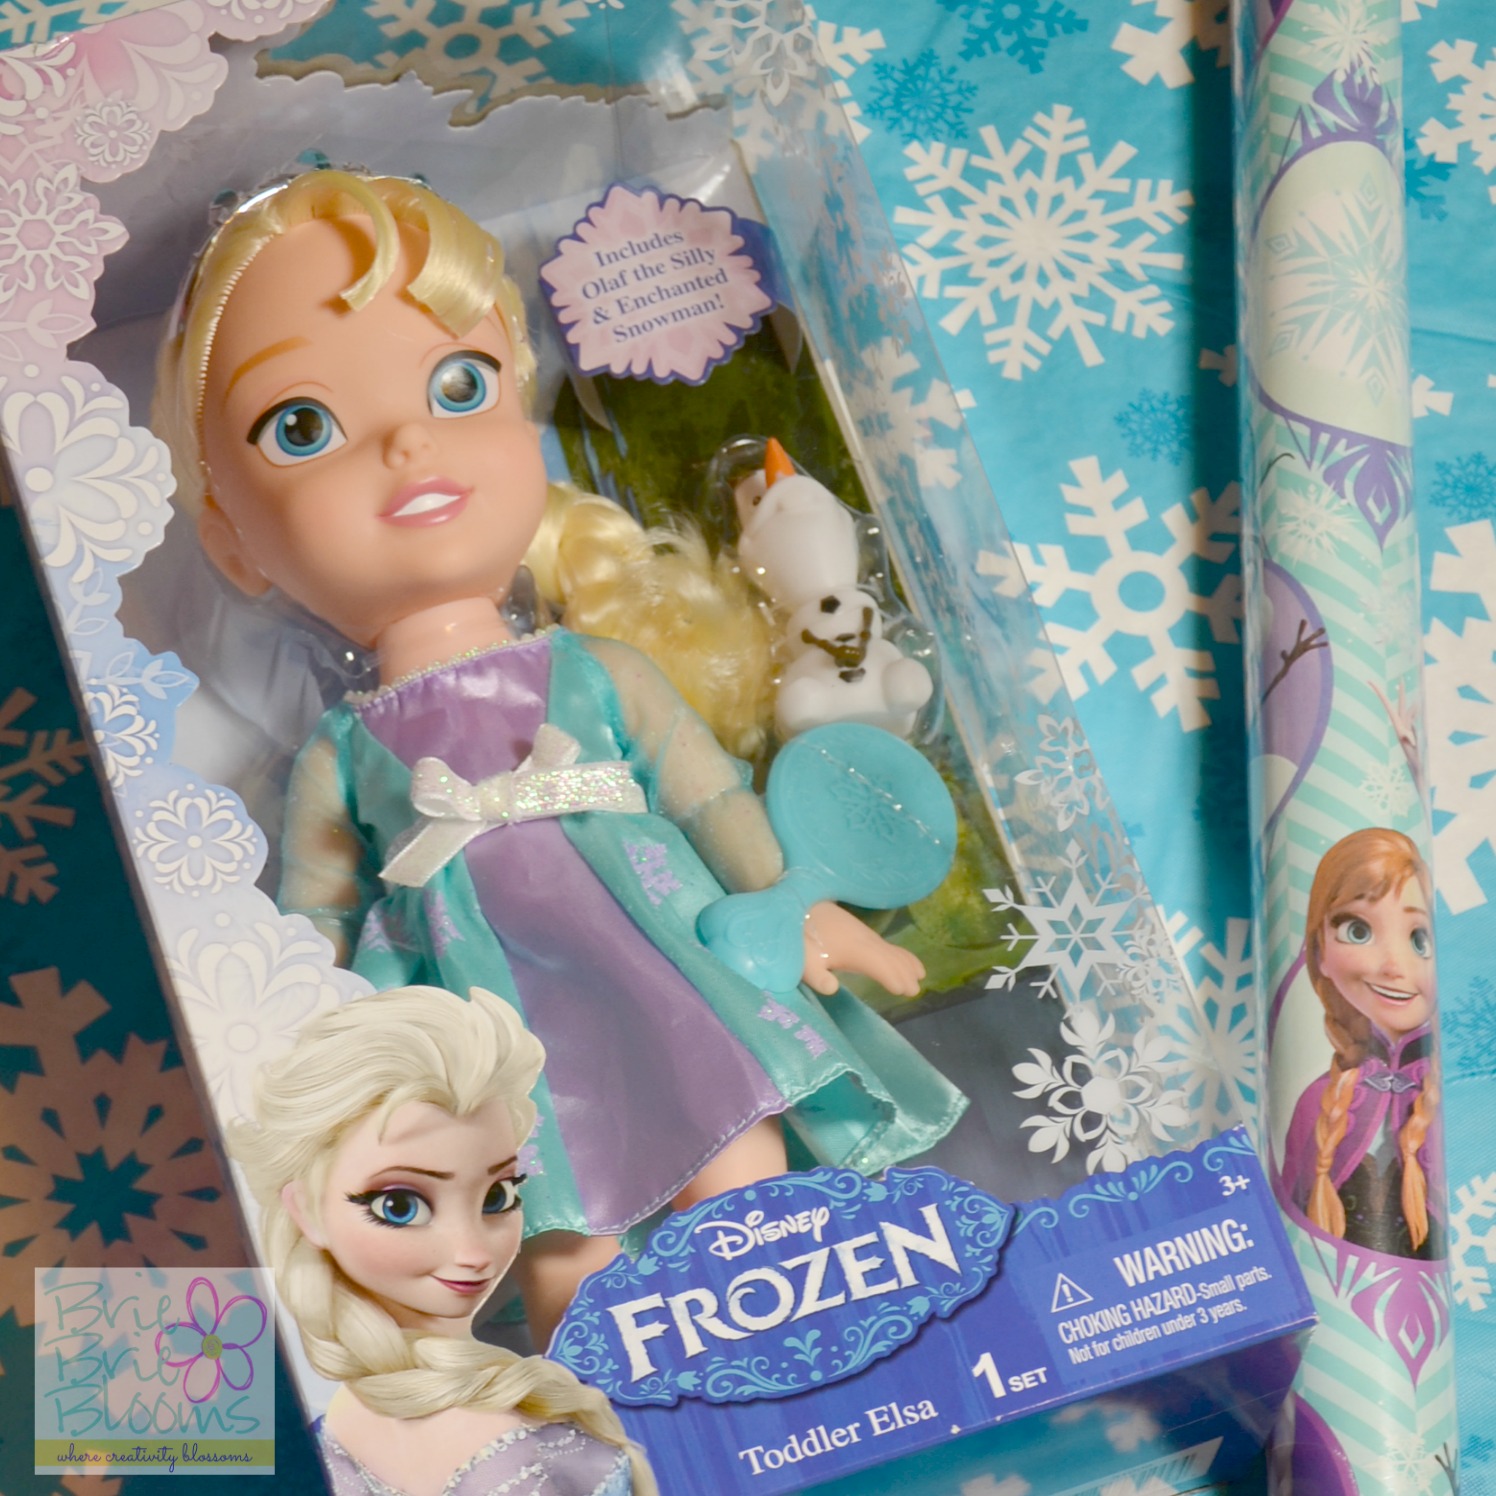 FROZEN Elsa doll from Walmart #FrozenFun #shop #cbias